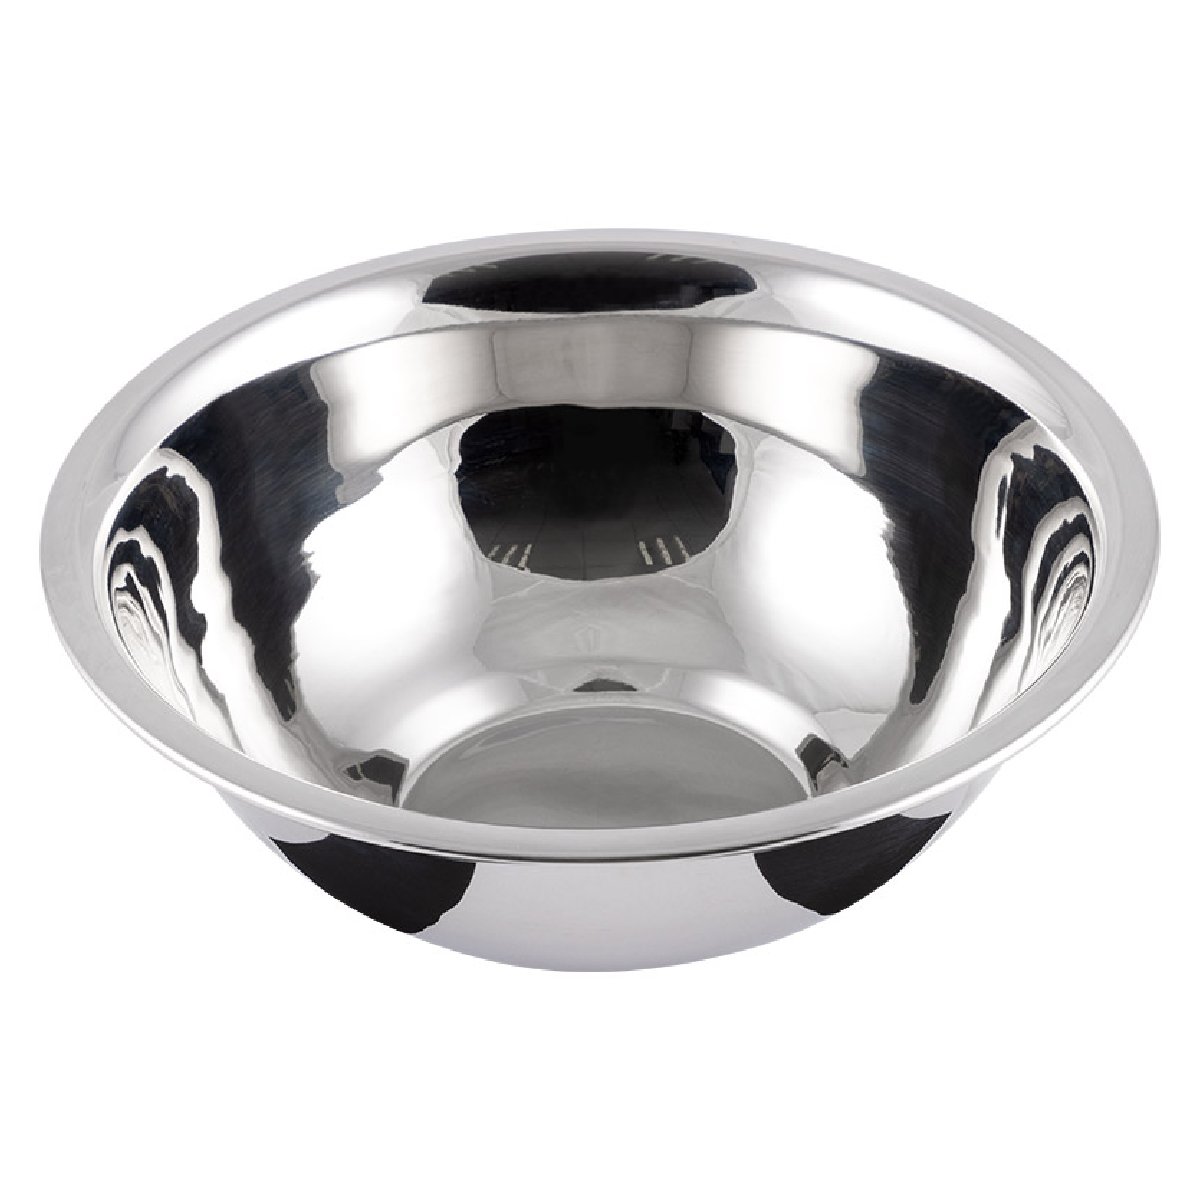 Миска Bowl-Roll-19, объем 1200 мл, нержавеющая сталь, зеркальная полировка, 19.5x6.9 см, Mallony (103827)Купить